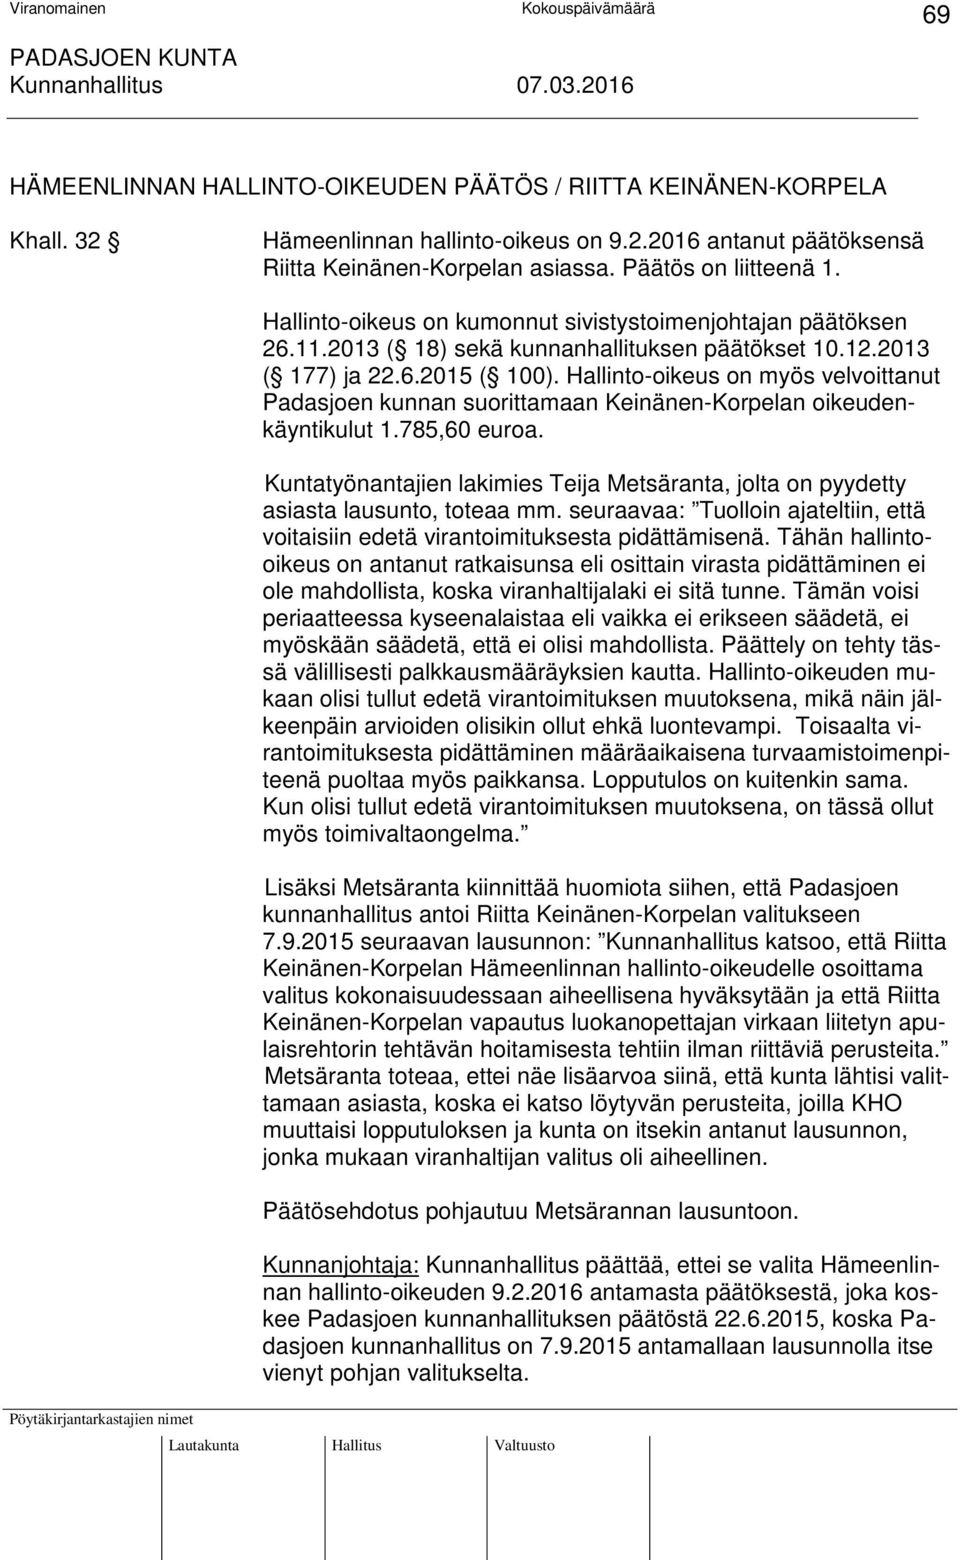 Hallinto-oikeus on myös velvoittanut Padasjoen kunnan suorittamaan Keinänen-Korpelan oikeudenkäyntikulut 1.785,60 euroa.